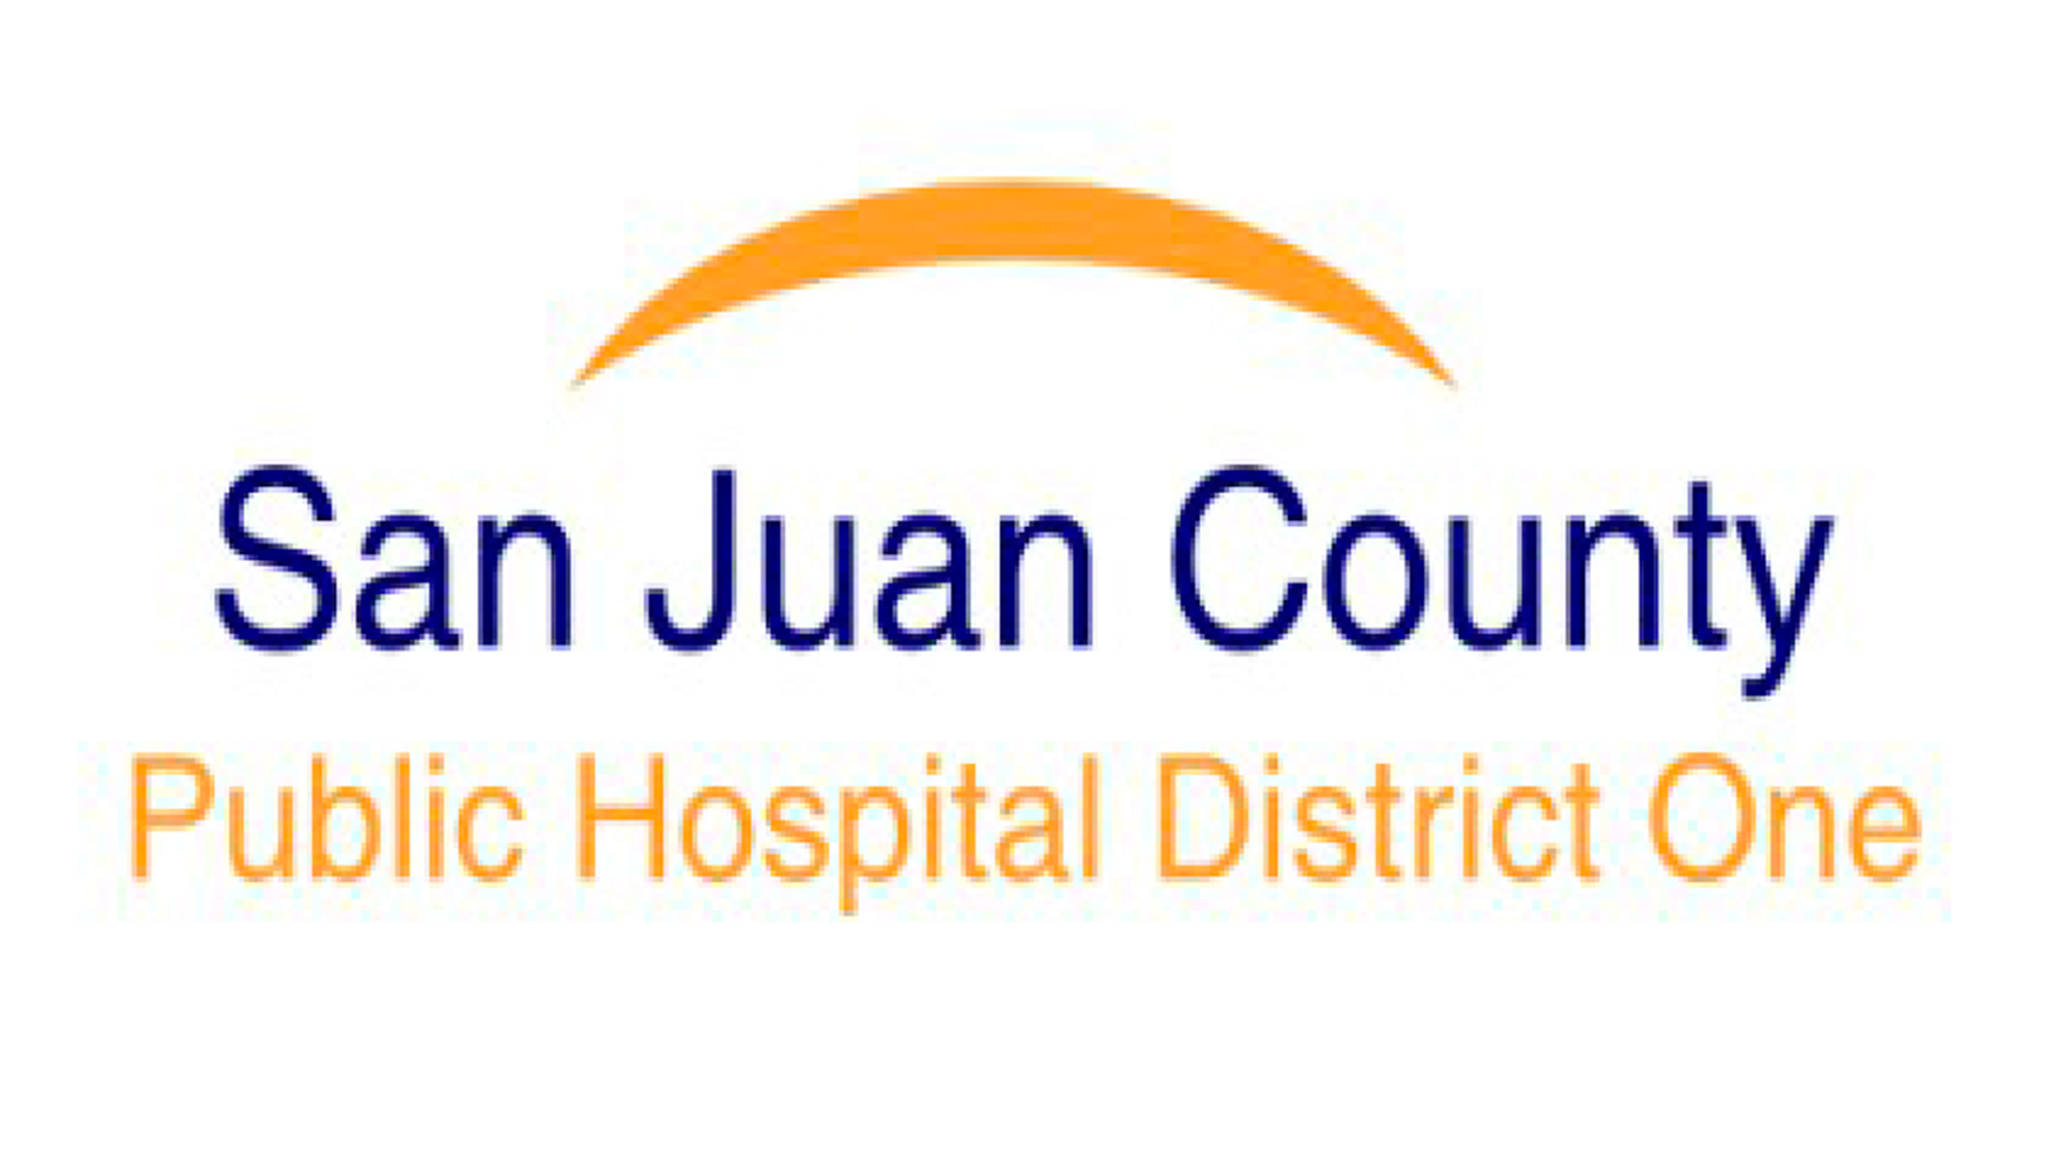 San Juan County Public Hospital District 1 meets Nov. 28